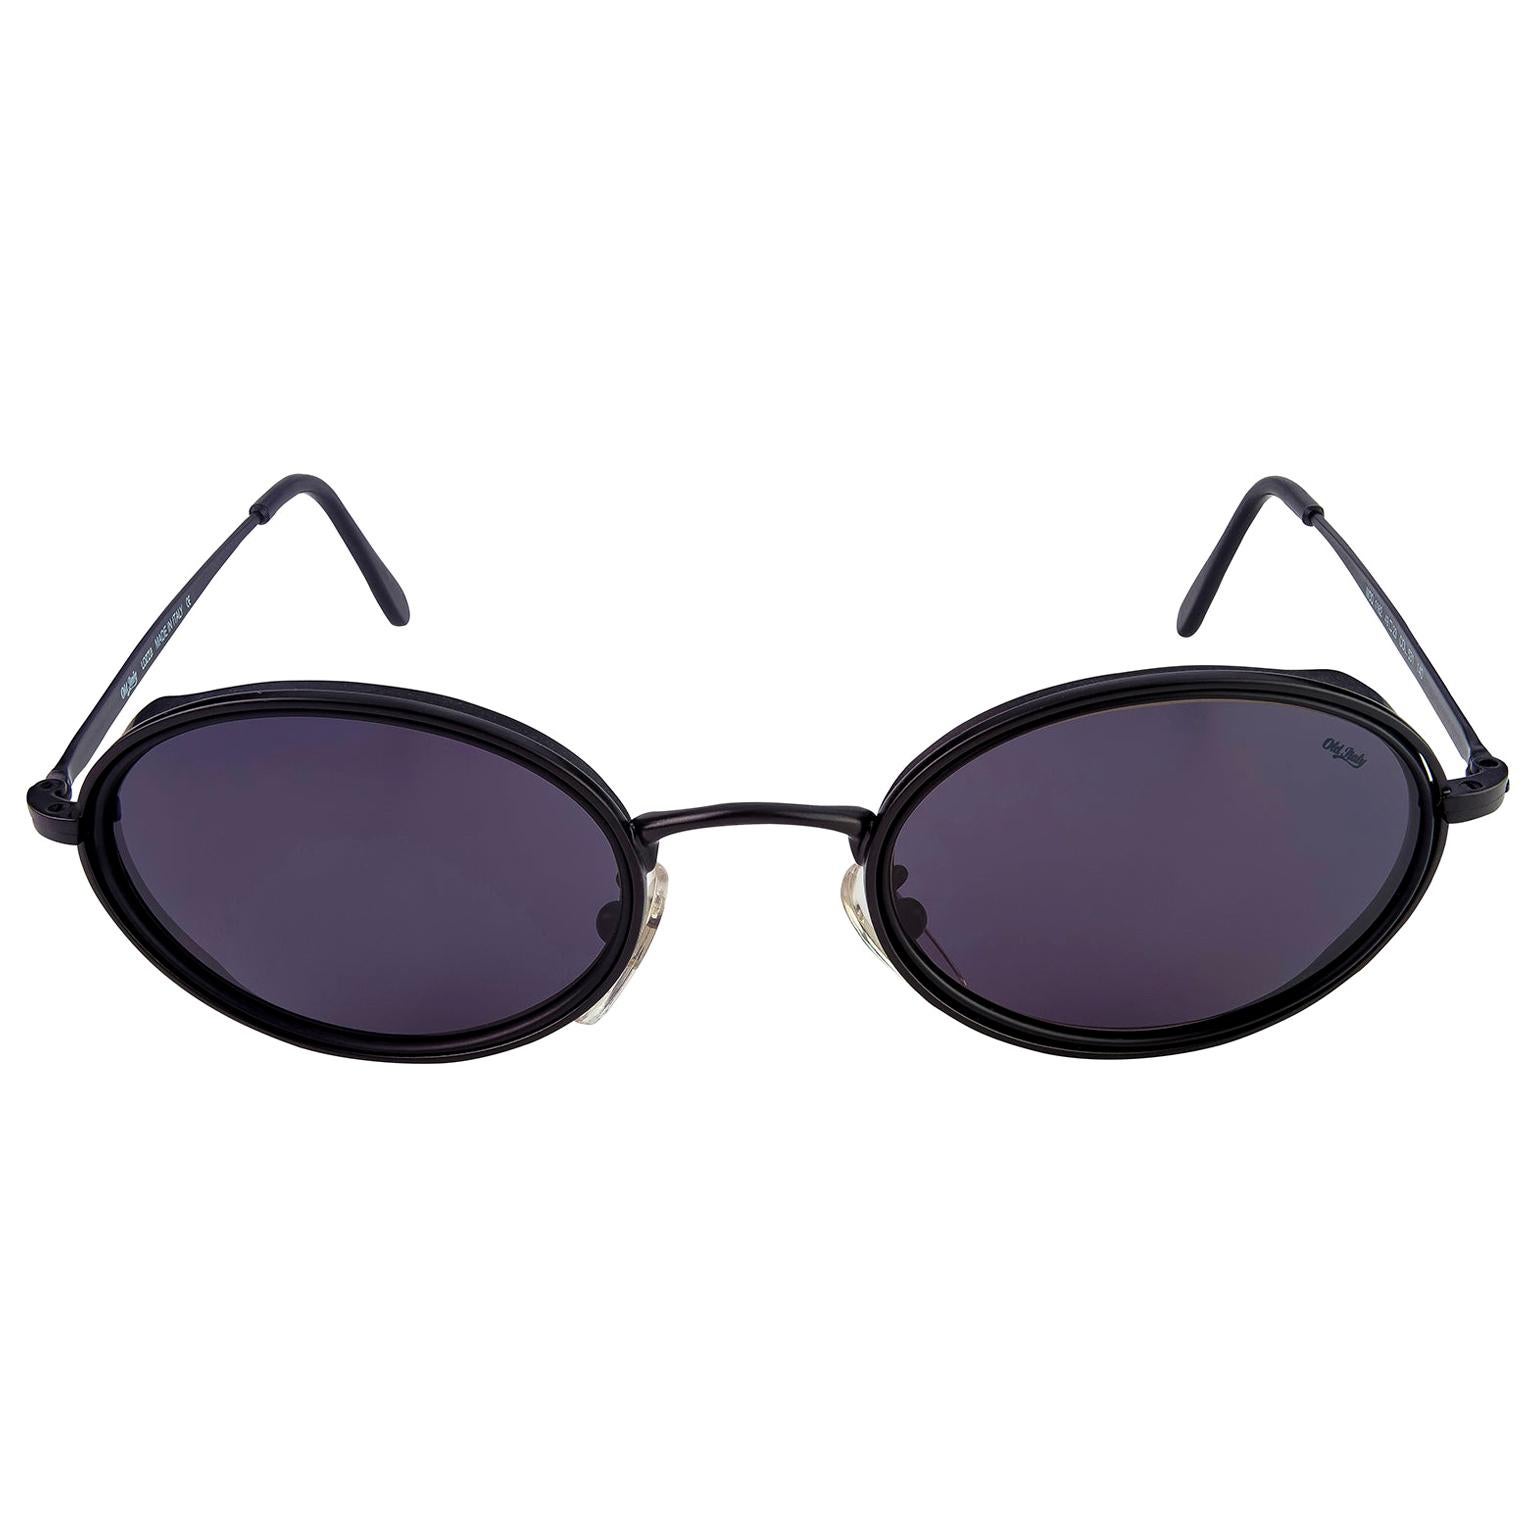 Créée en 1878, Lozza est la plus ancienne marque de lunettes en Italie, toujours précurseur dans le choix des styles et des matériaux : dans les années 20, elle a lancé les premières lunettes de soleil en cellulose et dans les années 30, les